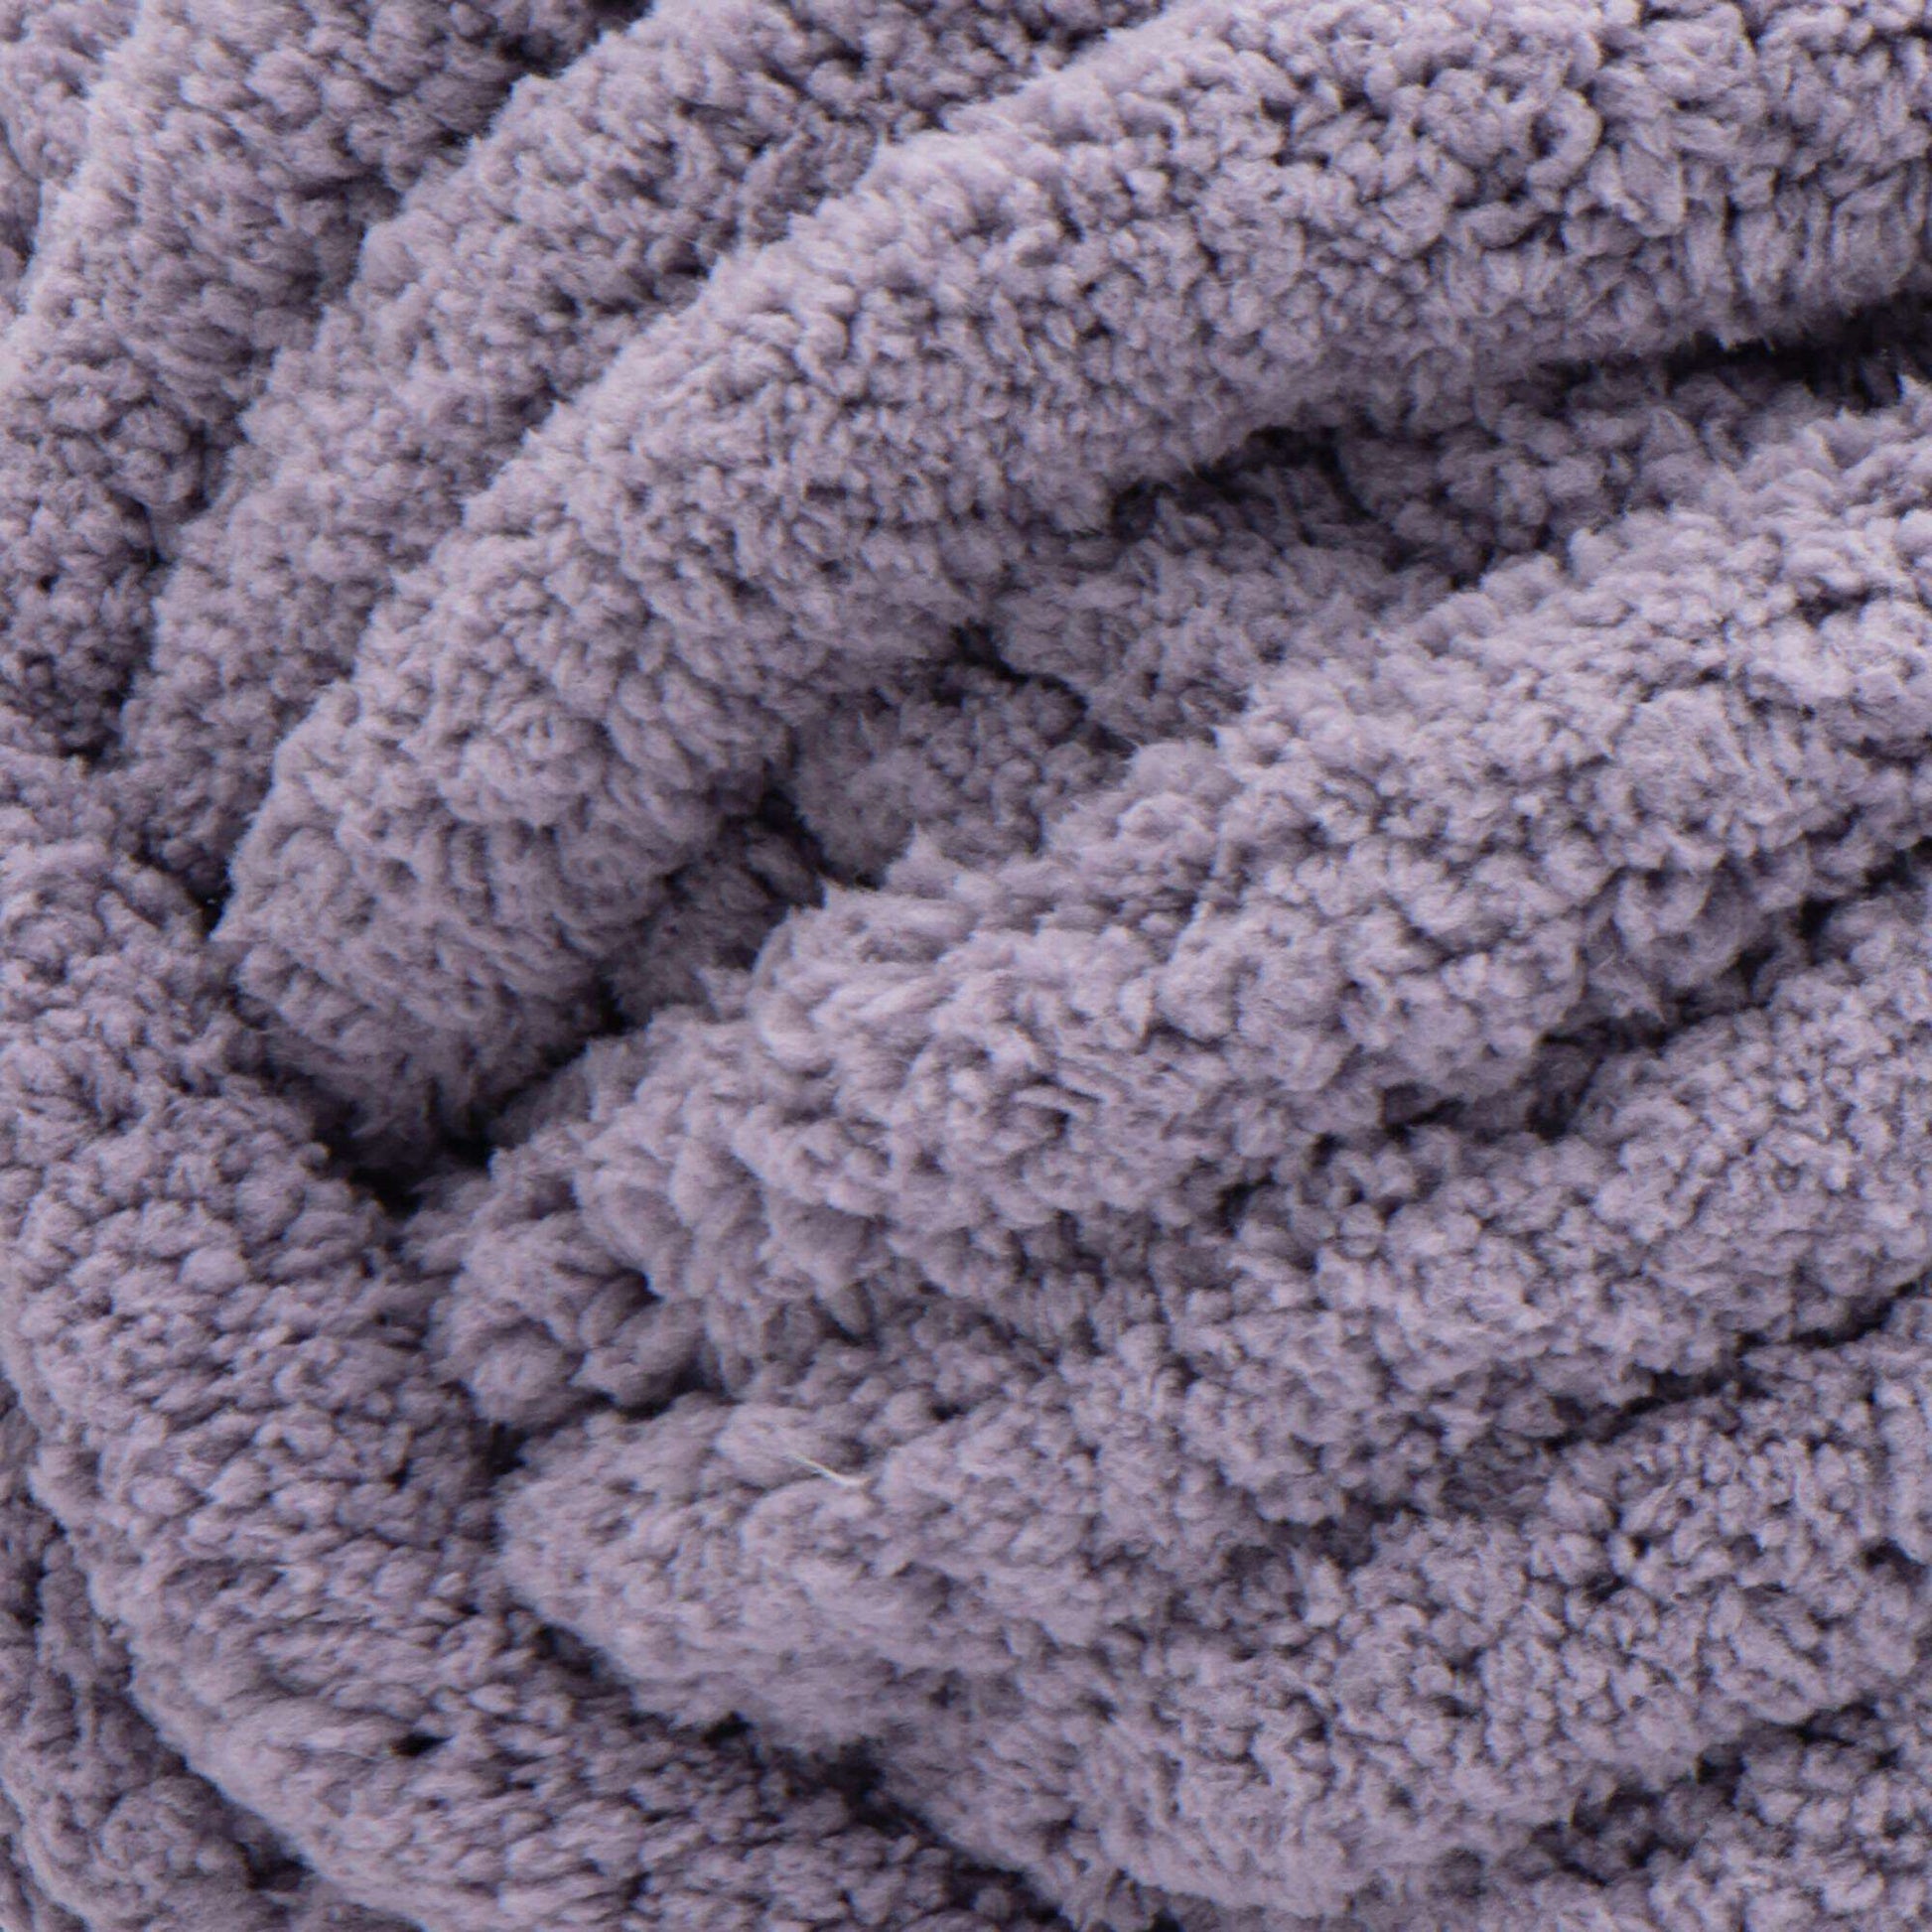 Bernat Blanket Big Yarn (300g/10.5oz) Periwinkle